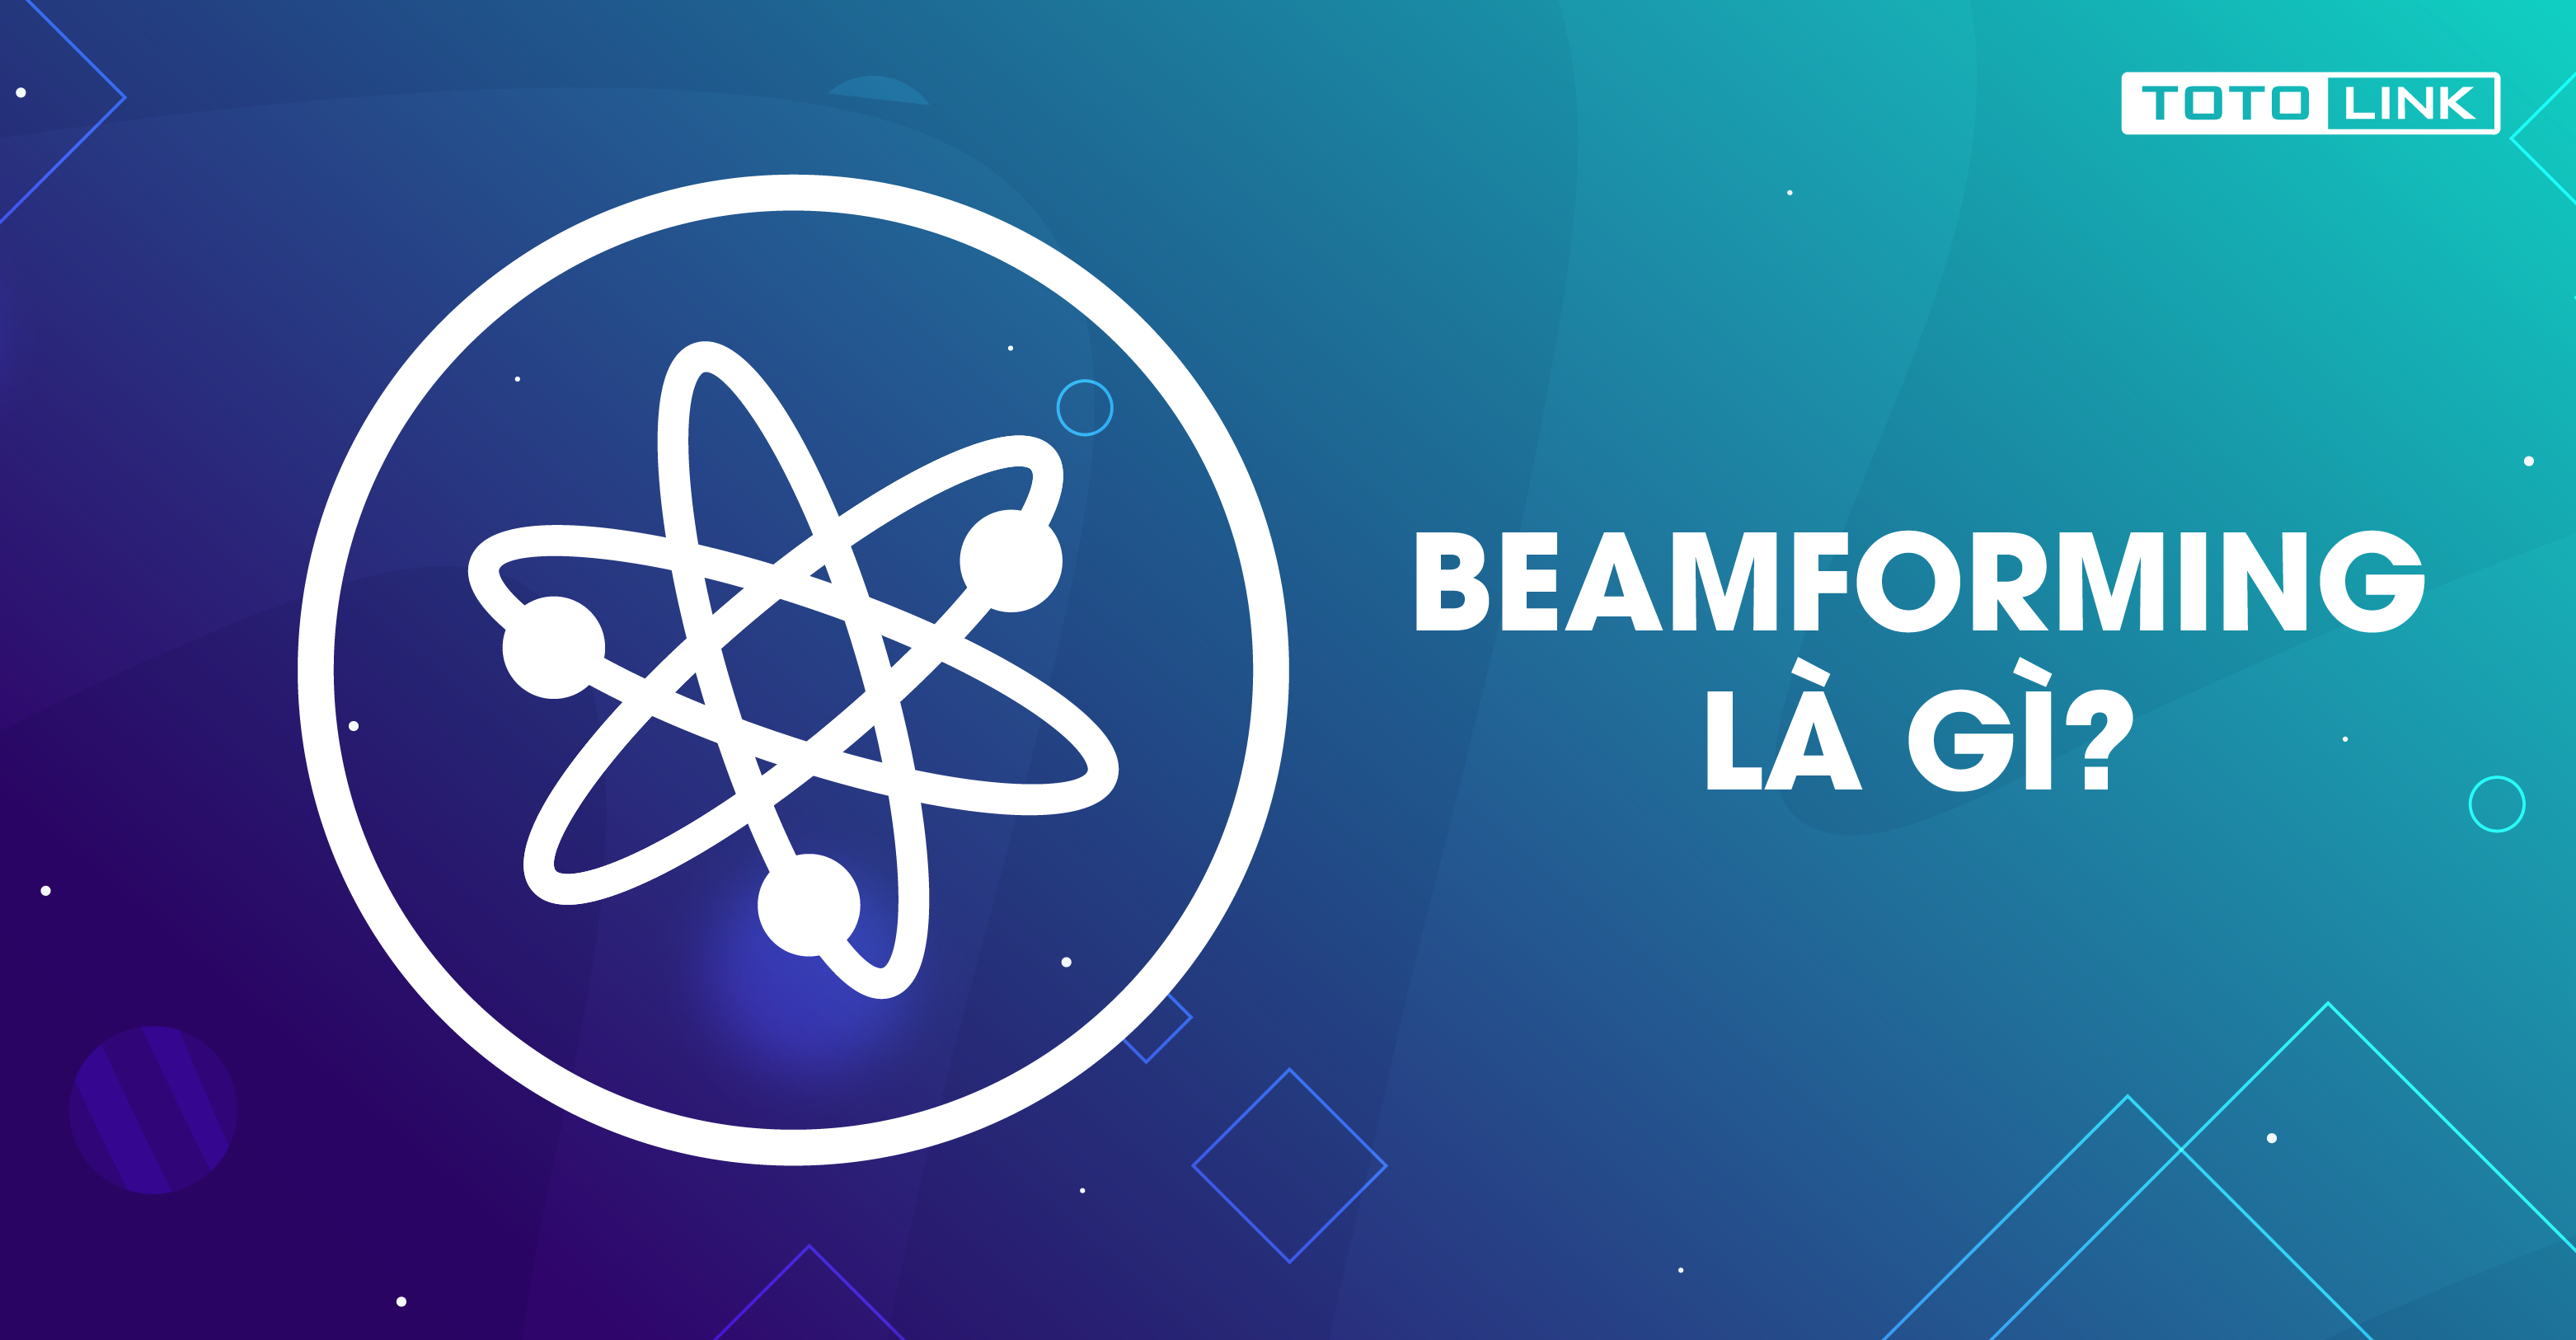 Beamforming là gì? Tìm hiểu tổng quan về beamforming!